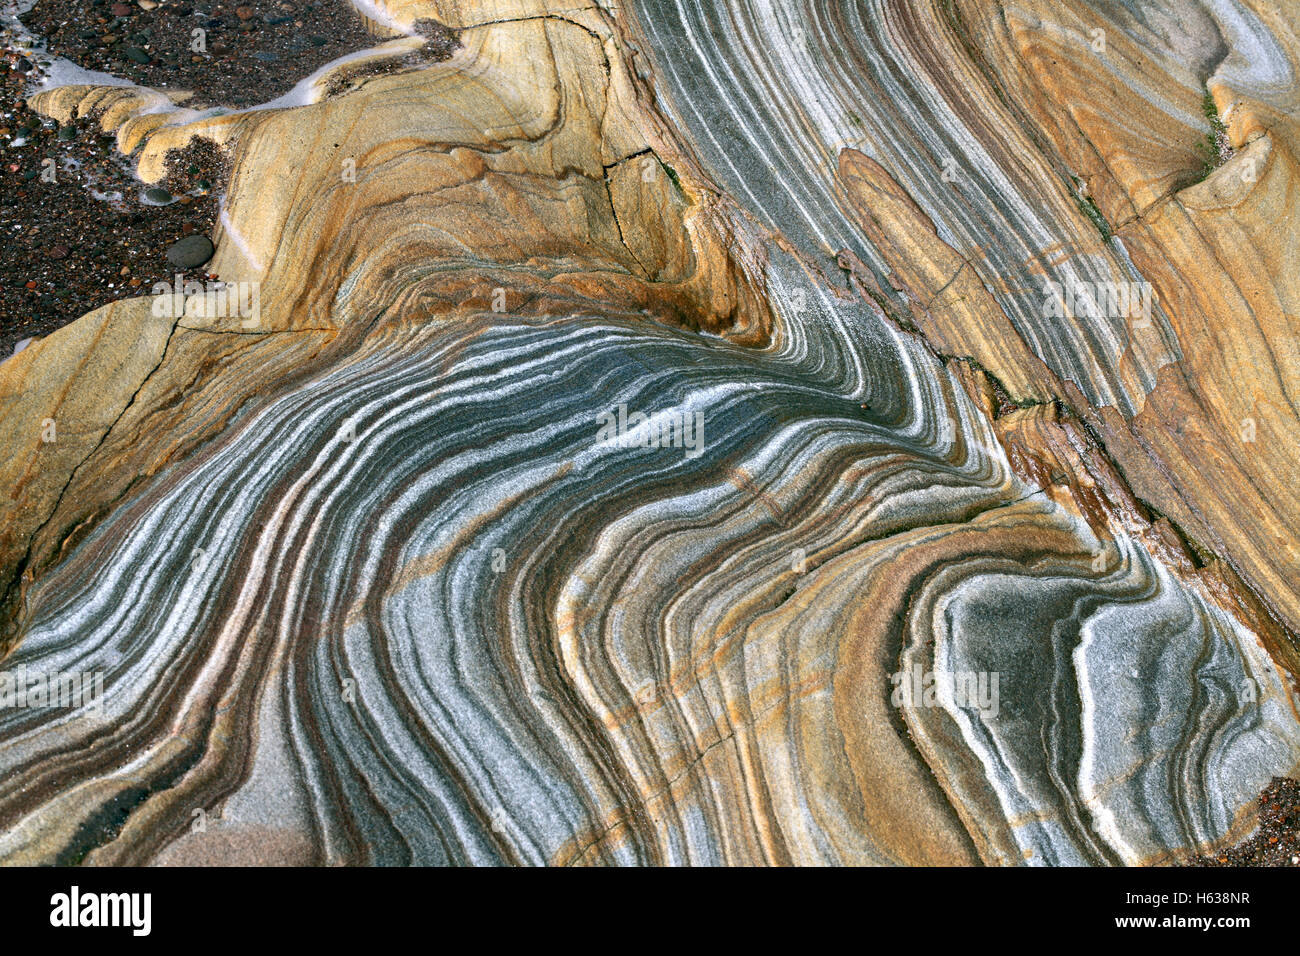 La stratification dans les plis et les affleurements rocheux colorés sur la plage de Spittal, près de Berwick-upon-Tweed, Northumberland. Banque D'Images